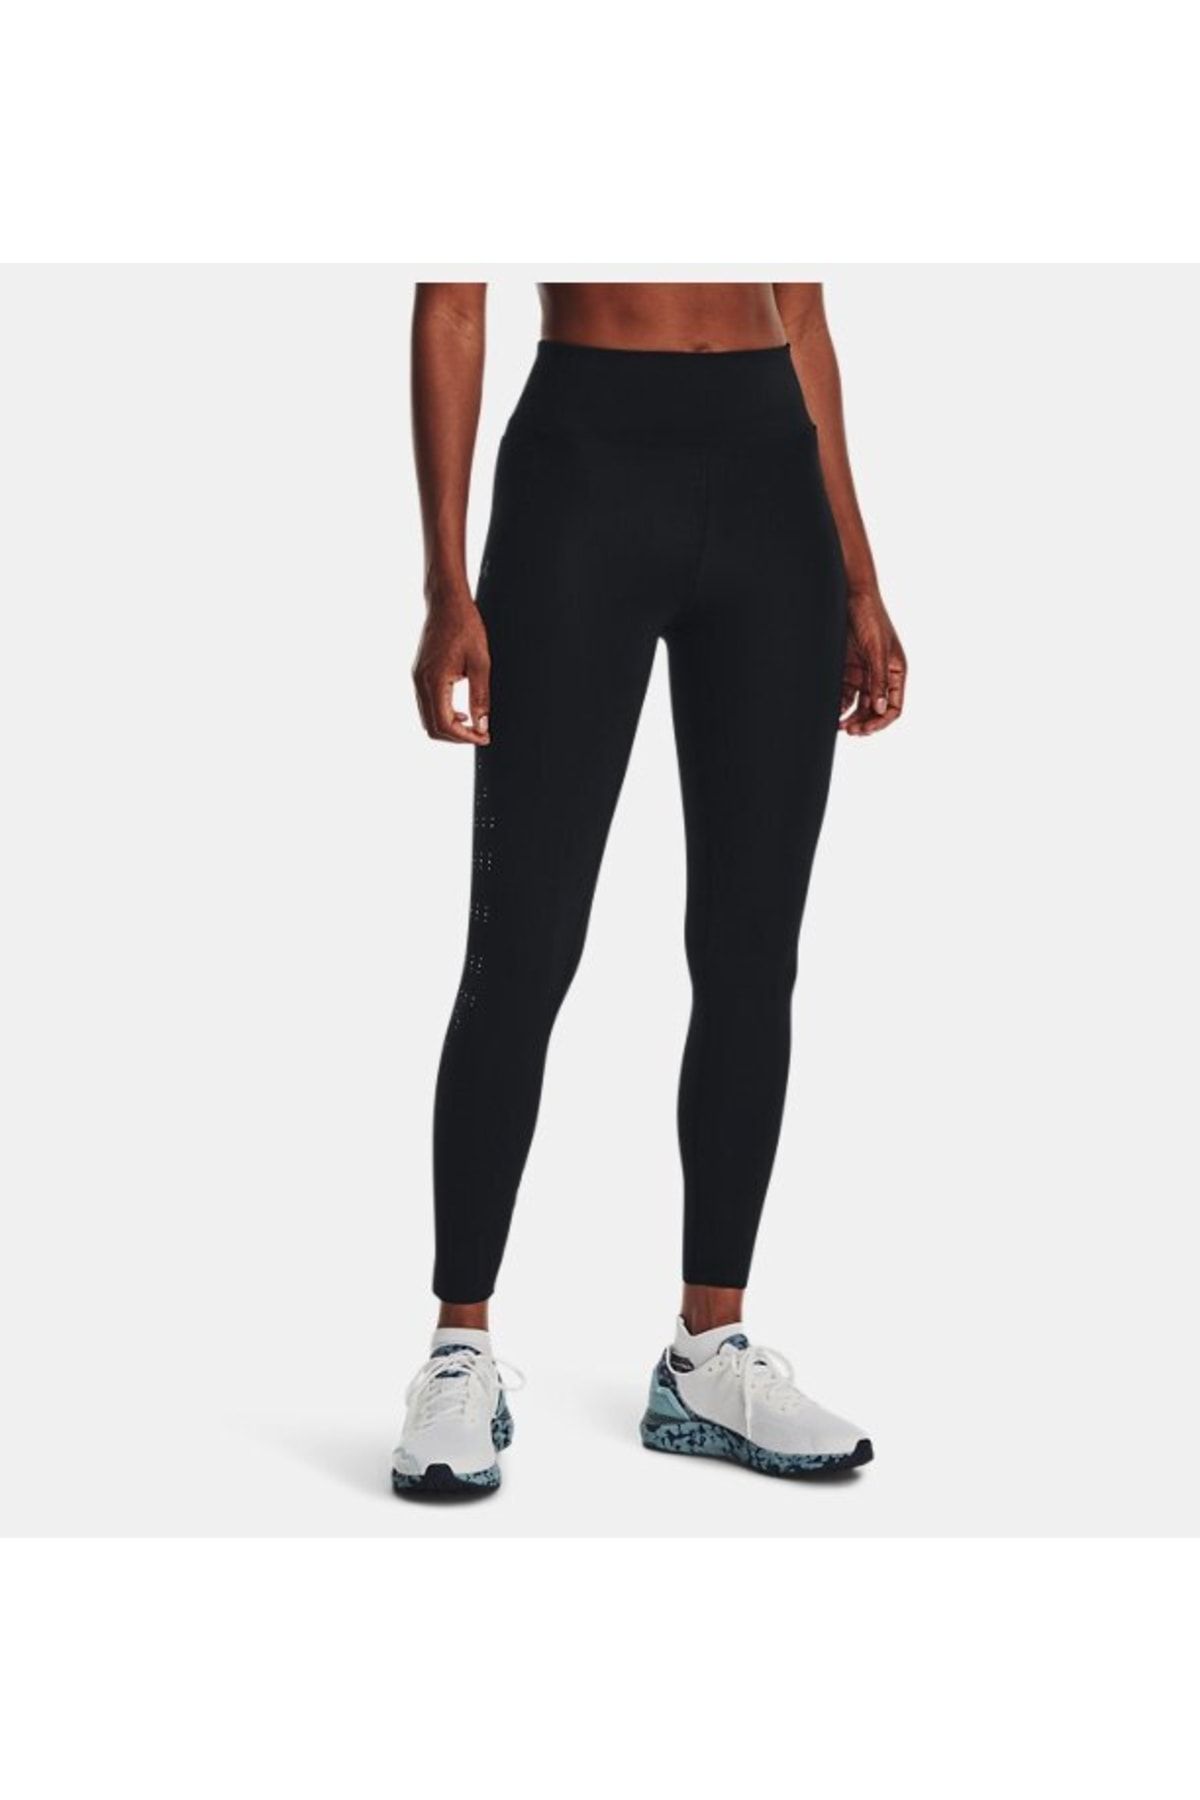 Nike Pro Men's Tights Dri-fit 3/4 Siyah Erkek Taytı Fiyatı, Yorumları -  Trendyol